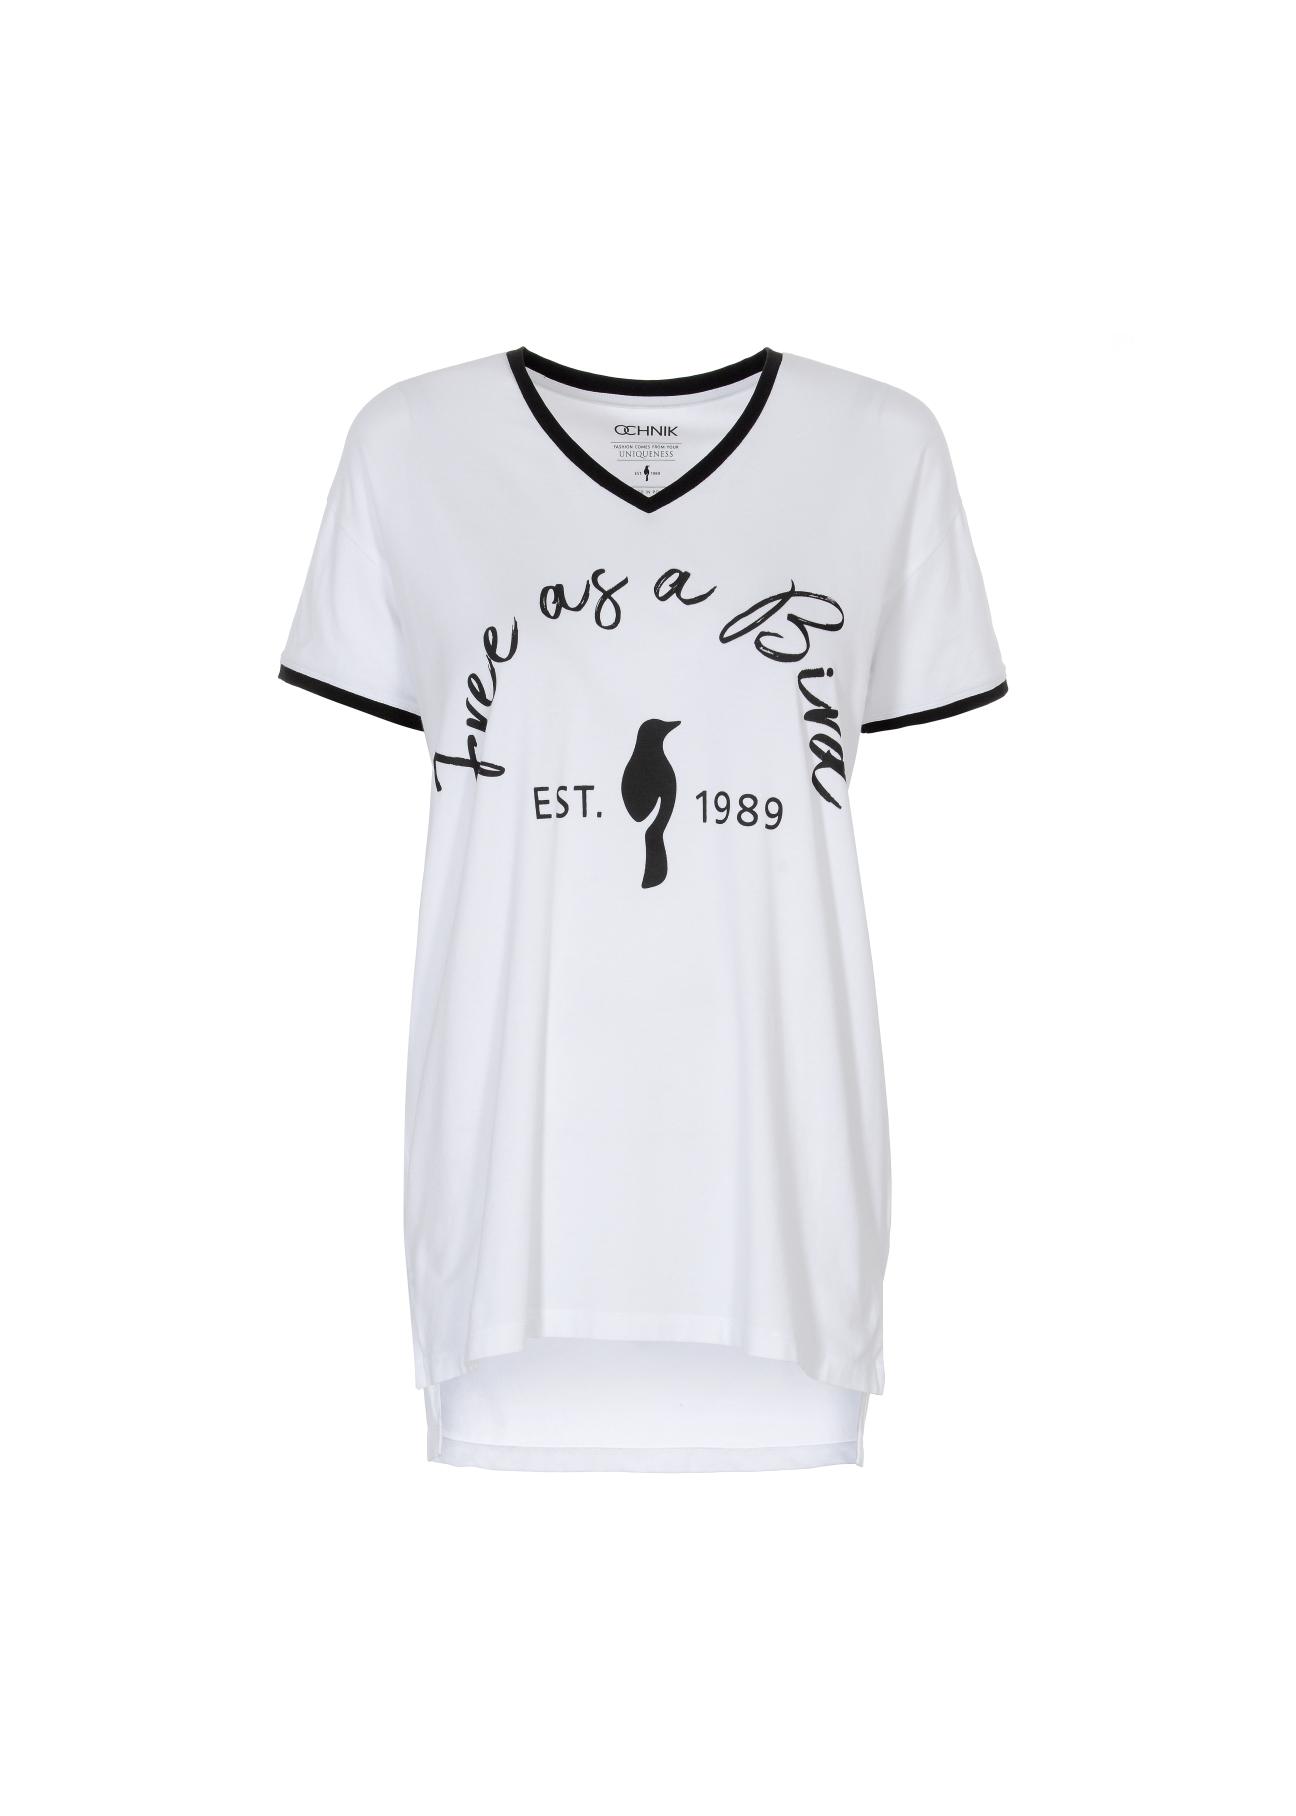 Biały T-shirt z dekoltem V damski TSHDT-0065-11(W21)